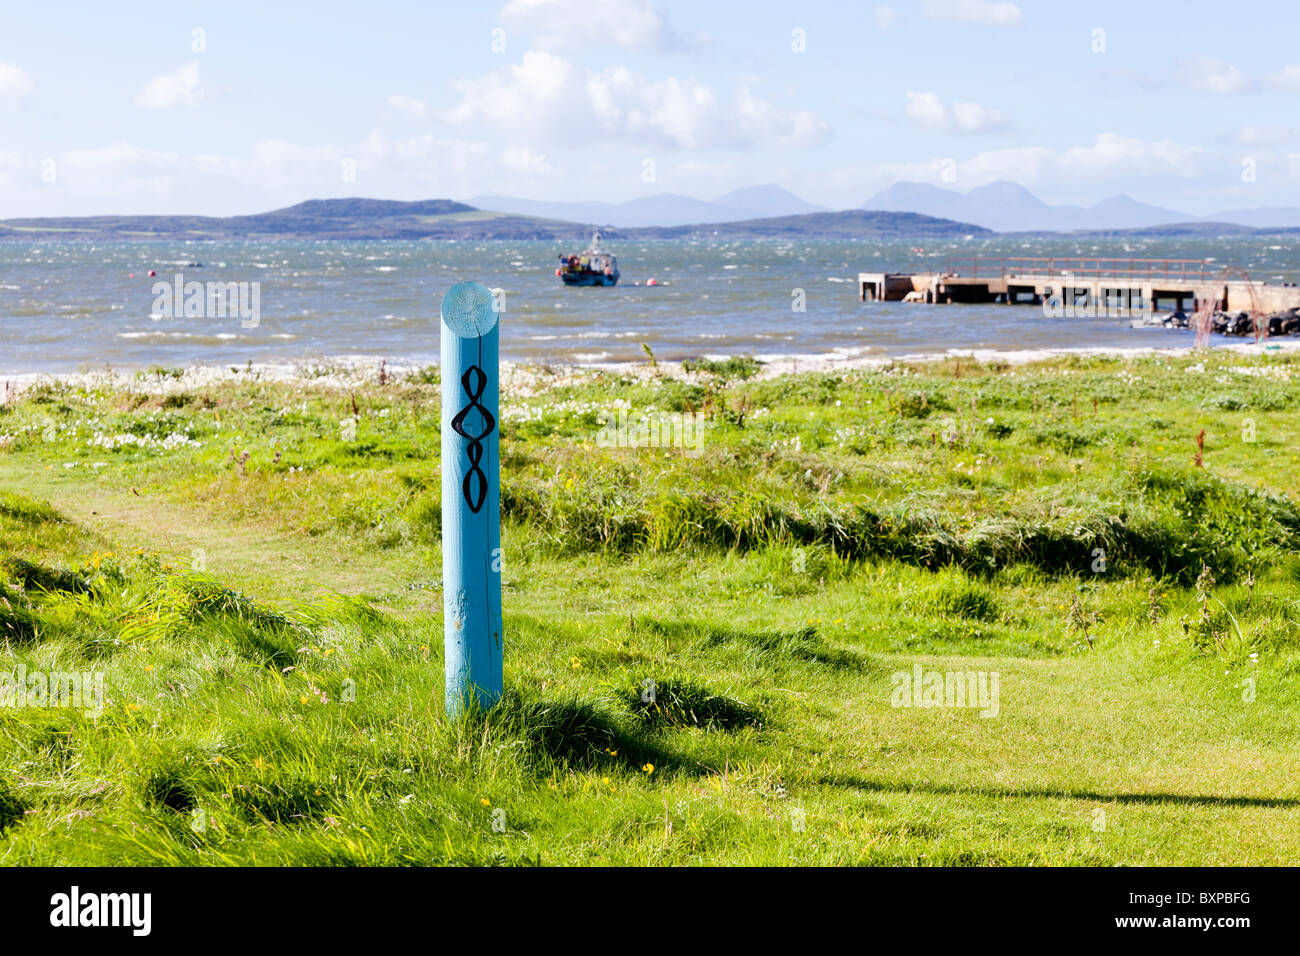 Bohnenstroh auszuschildern Kintyre dafür an Tayinloan auf der Halbinsel Kintyre, Argyll & Bute, Schottland. Gigha und Jura sind sichtbar Stockfoto